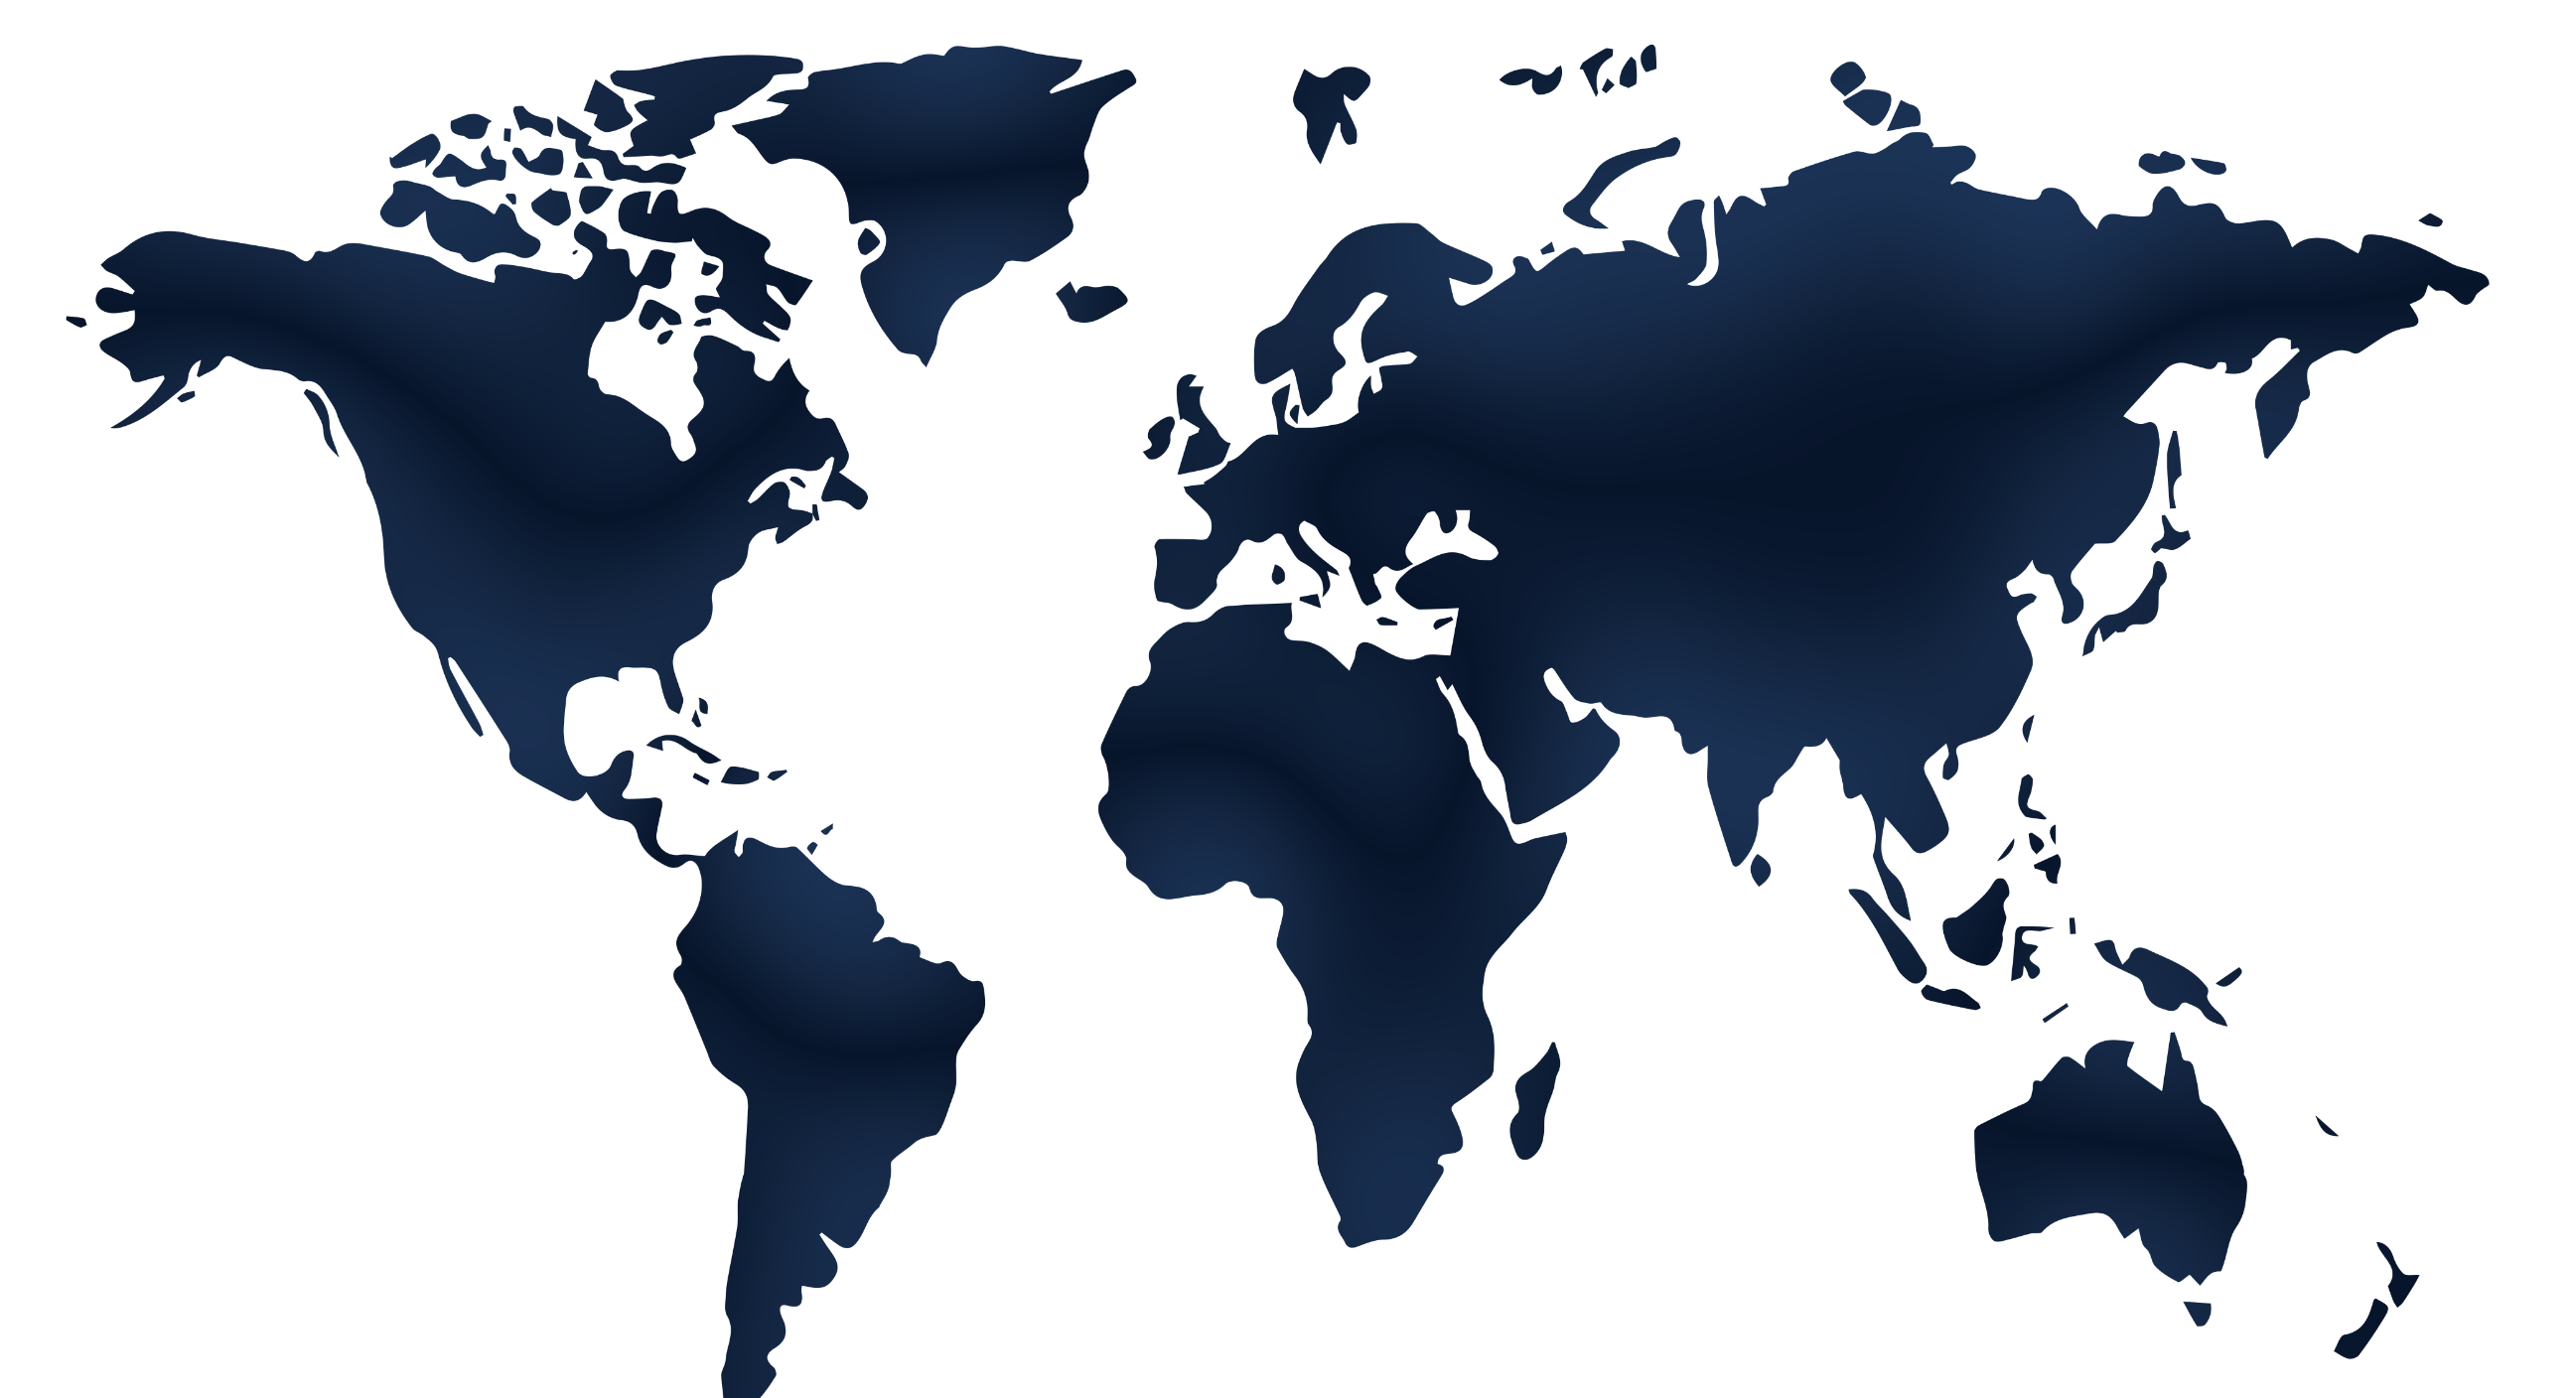 Mappa del mondo con puntini che indicano la presenza globale di Fossil.